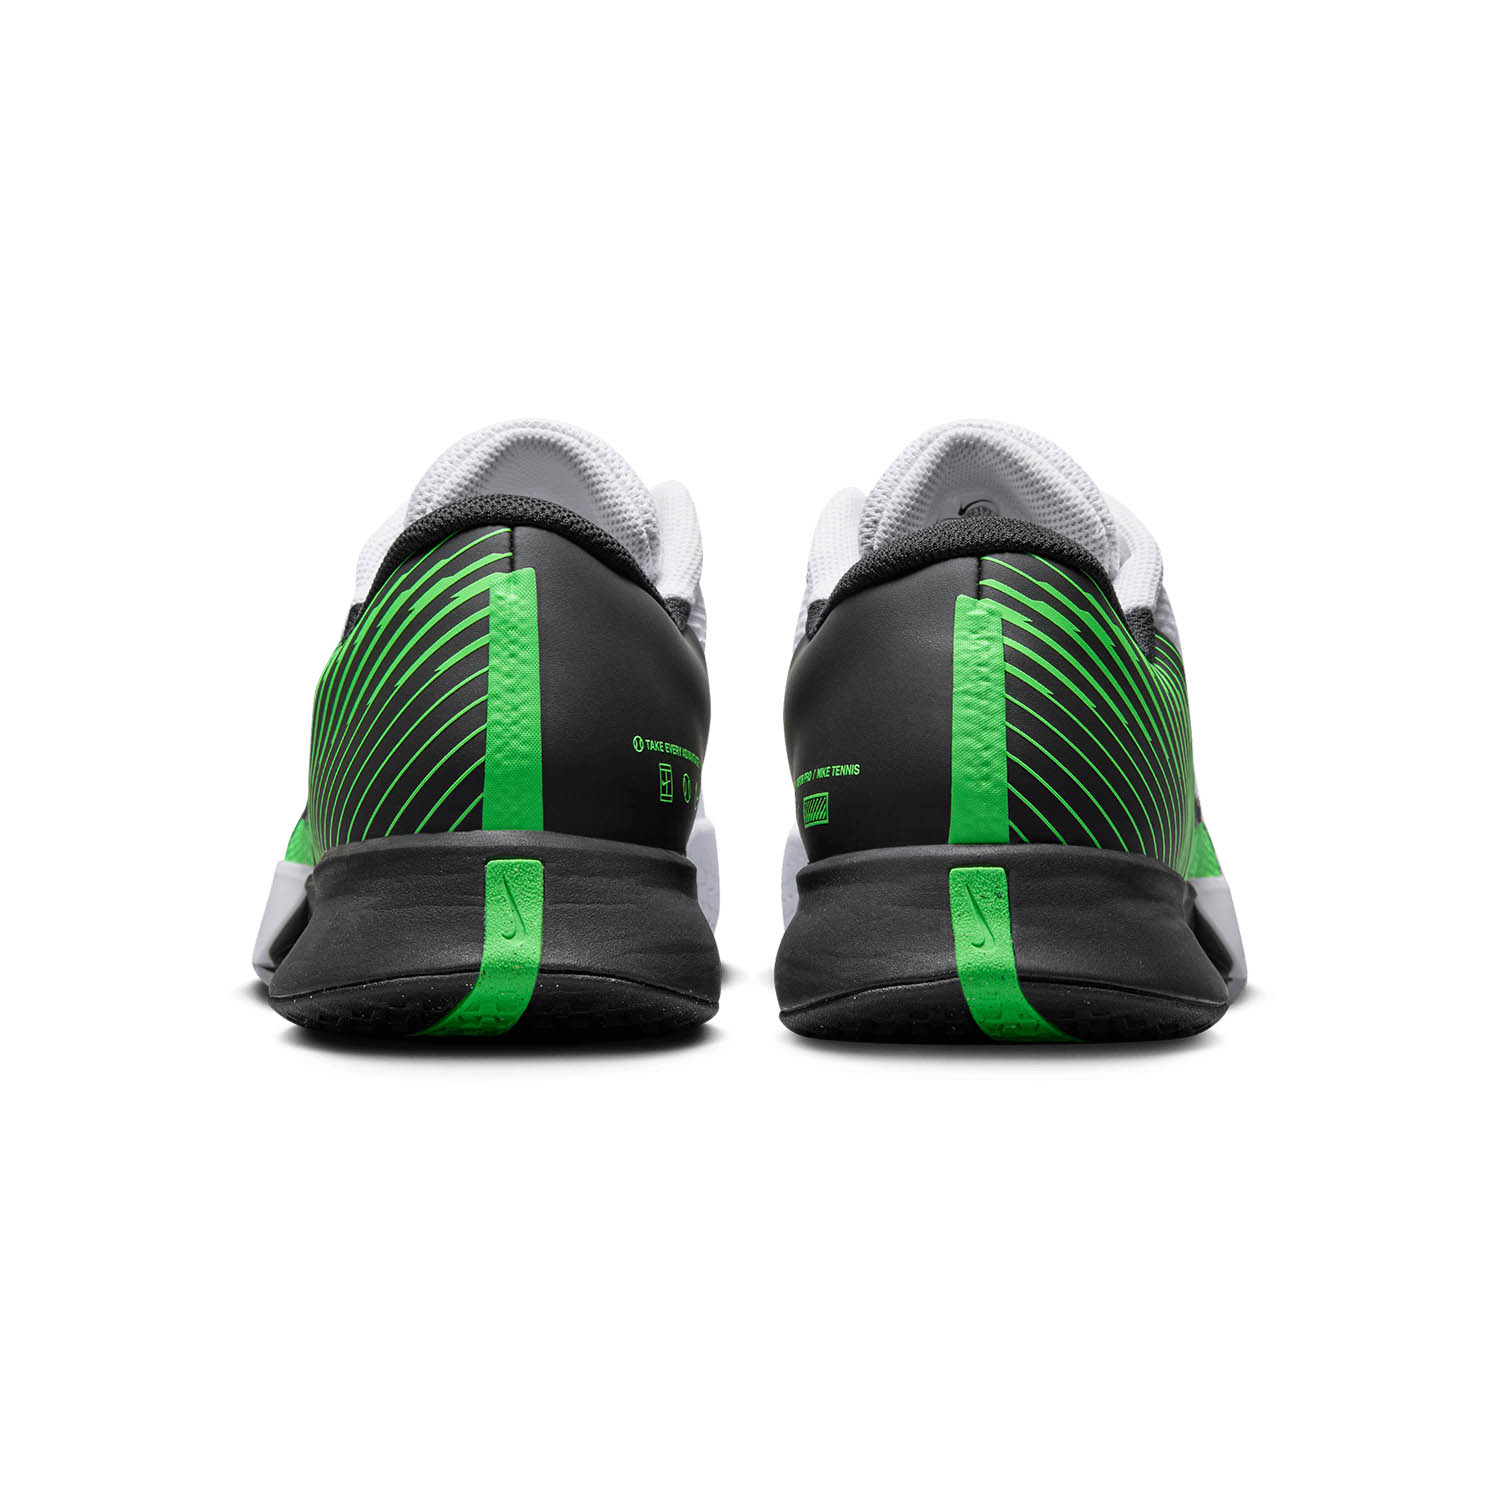 Nike Court Air Zoom Vapor Pro 2 HC - White/Poison Green/Black